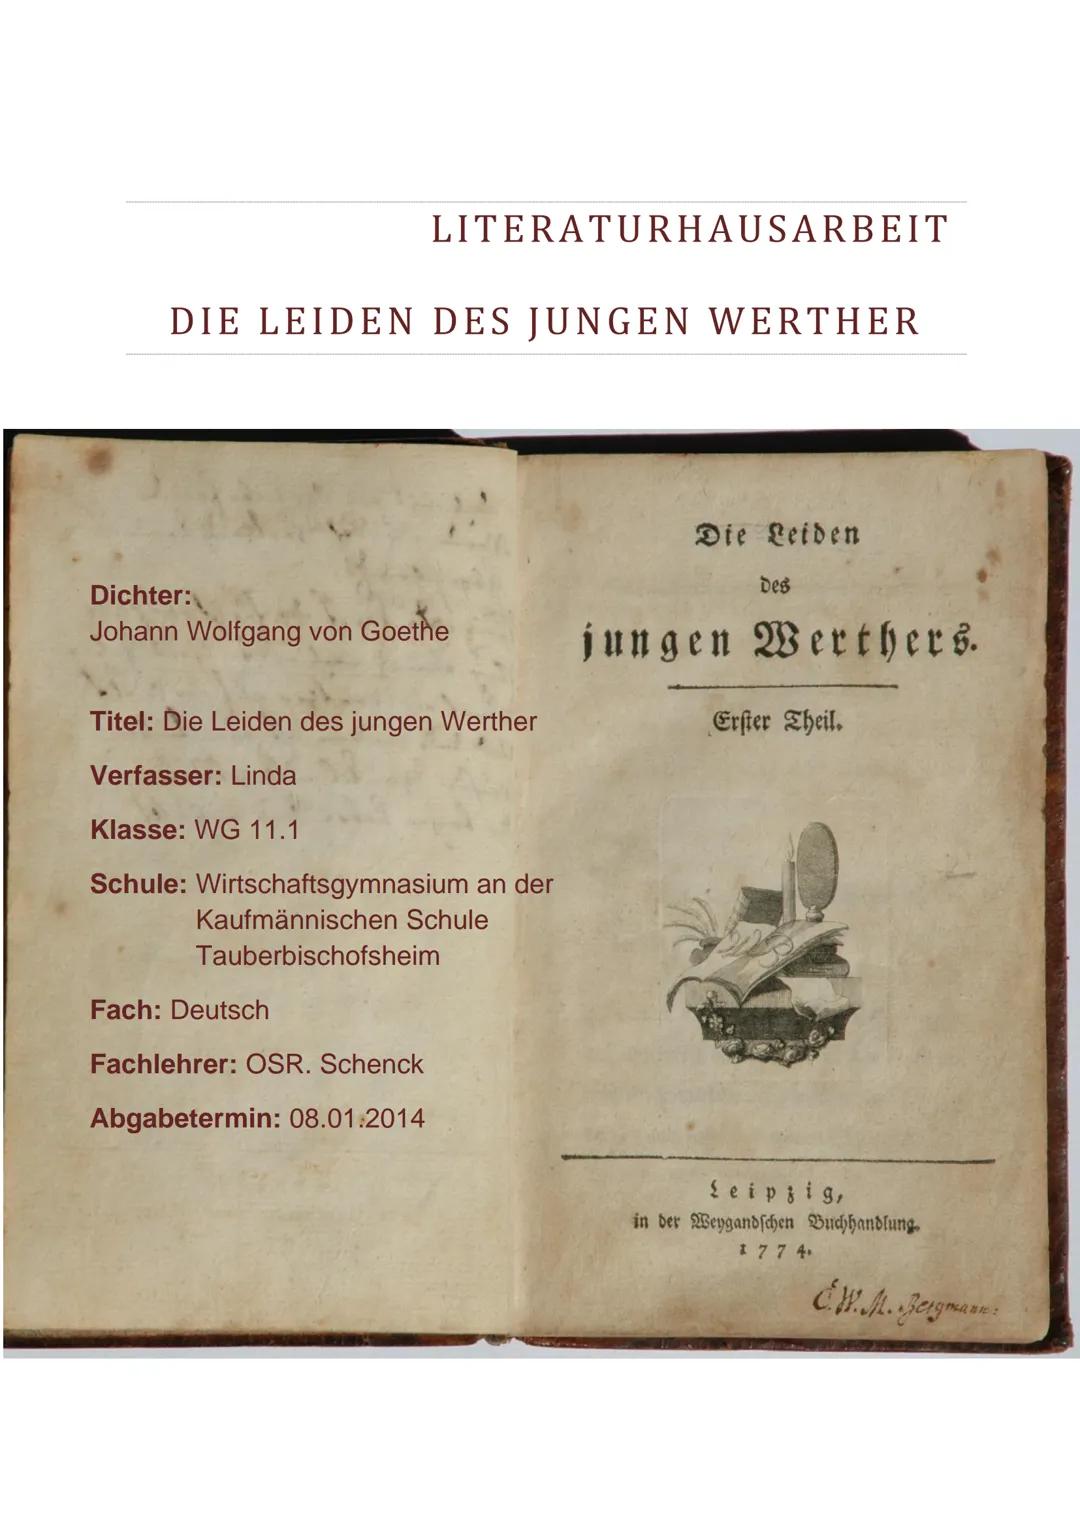 DIE LEIDEN DES JUNGEN WERTHER
LITERATURHAUSARBEIT
Dichter:
Johann Wolfgang von Goethe
Titel: Die Leiden des jungen Werther
Verfasser: Linda
